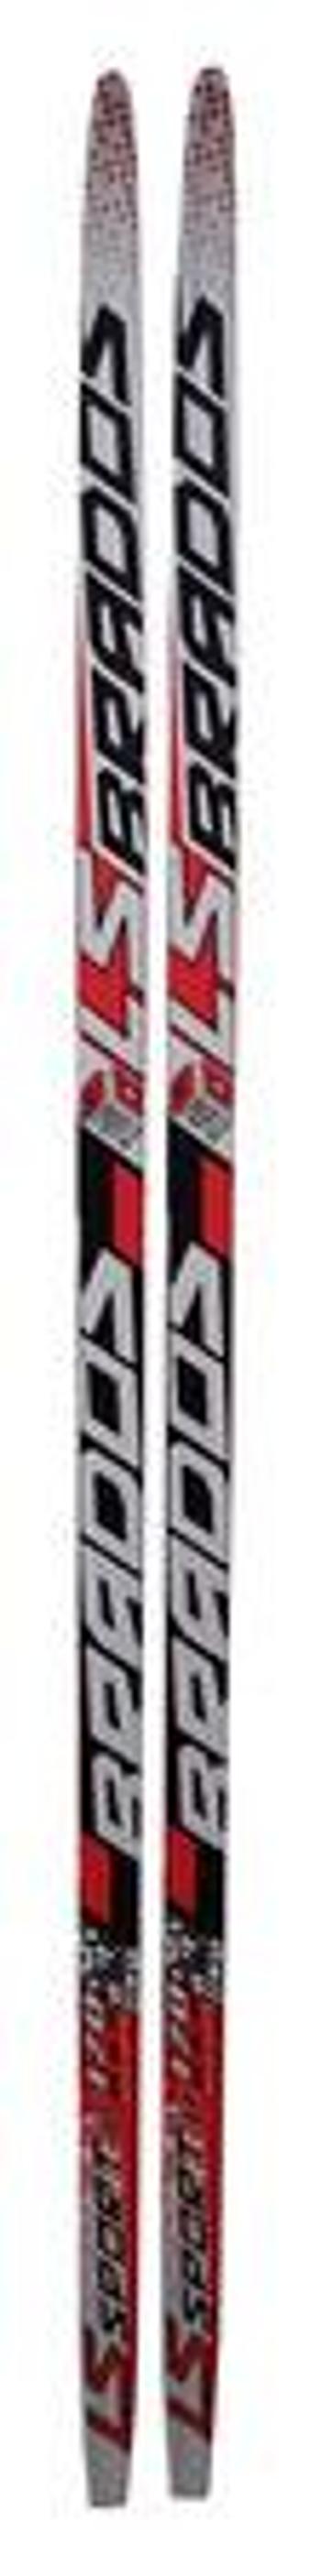 SKOL LST1/1S 2022/23 170cm běžecké lyže